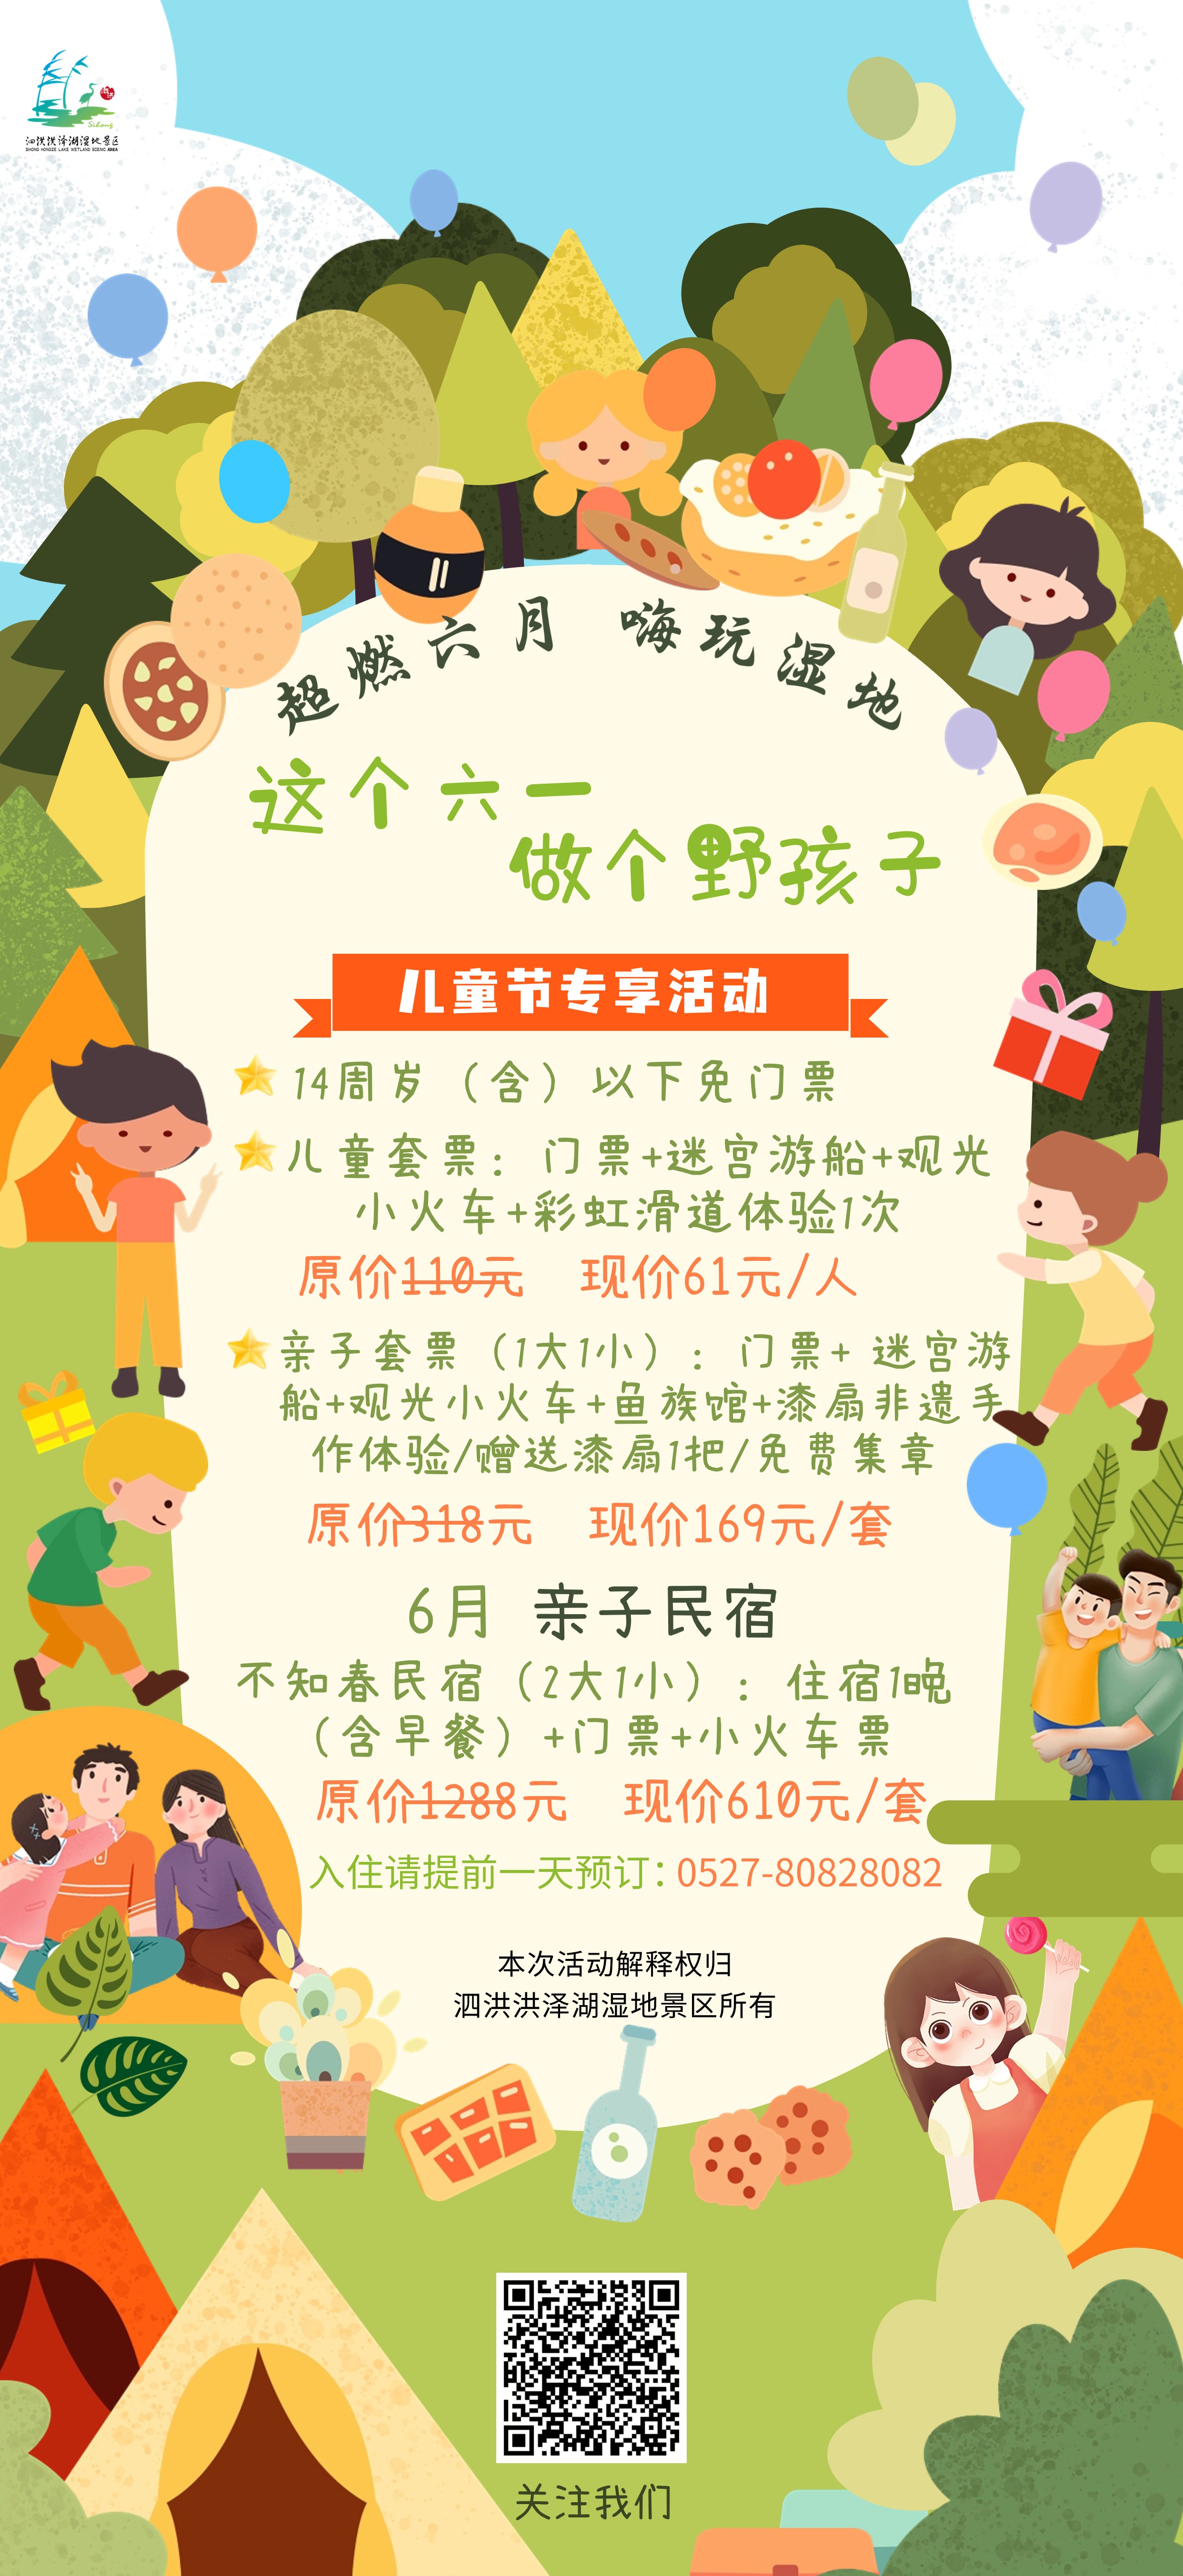 61儿童节节日活动邀请函手机海报.jpg